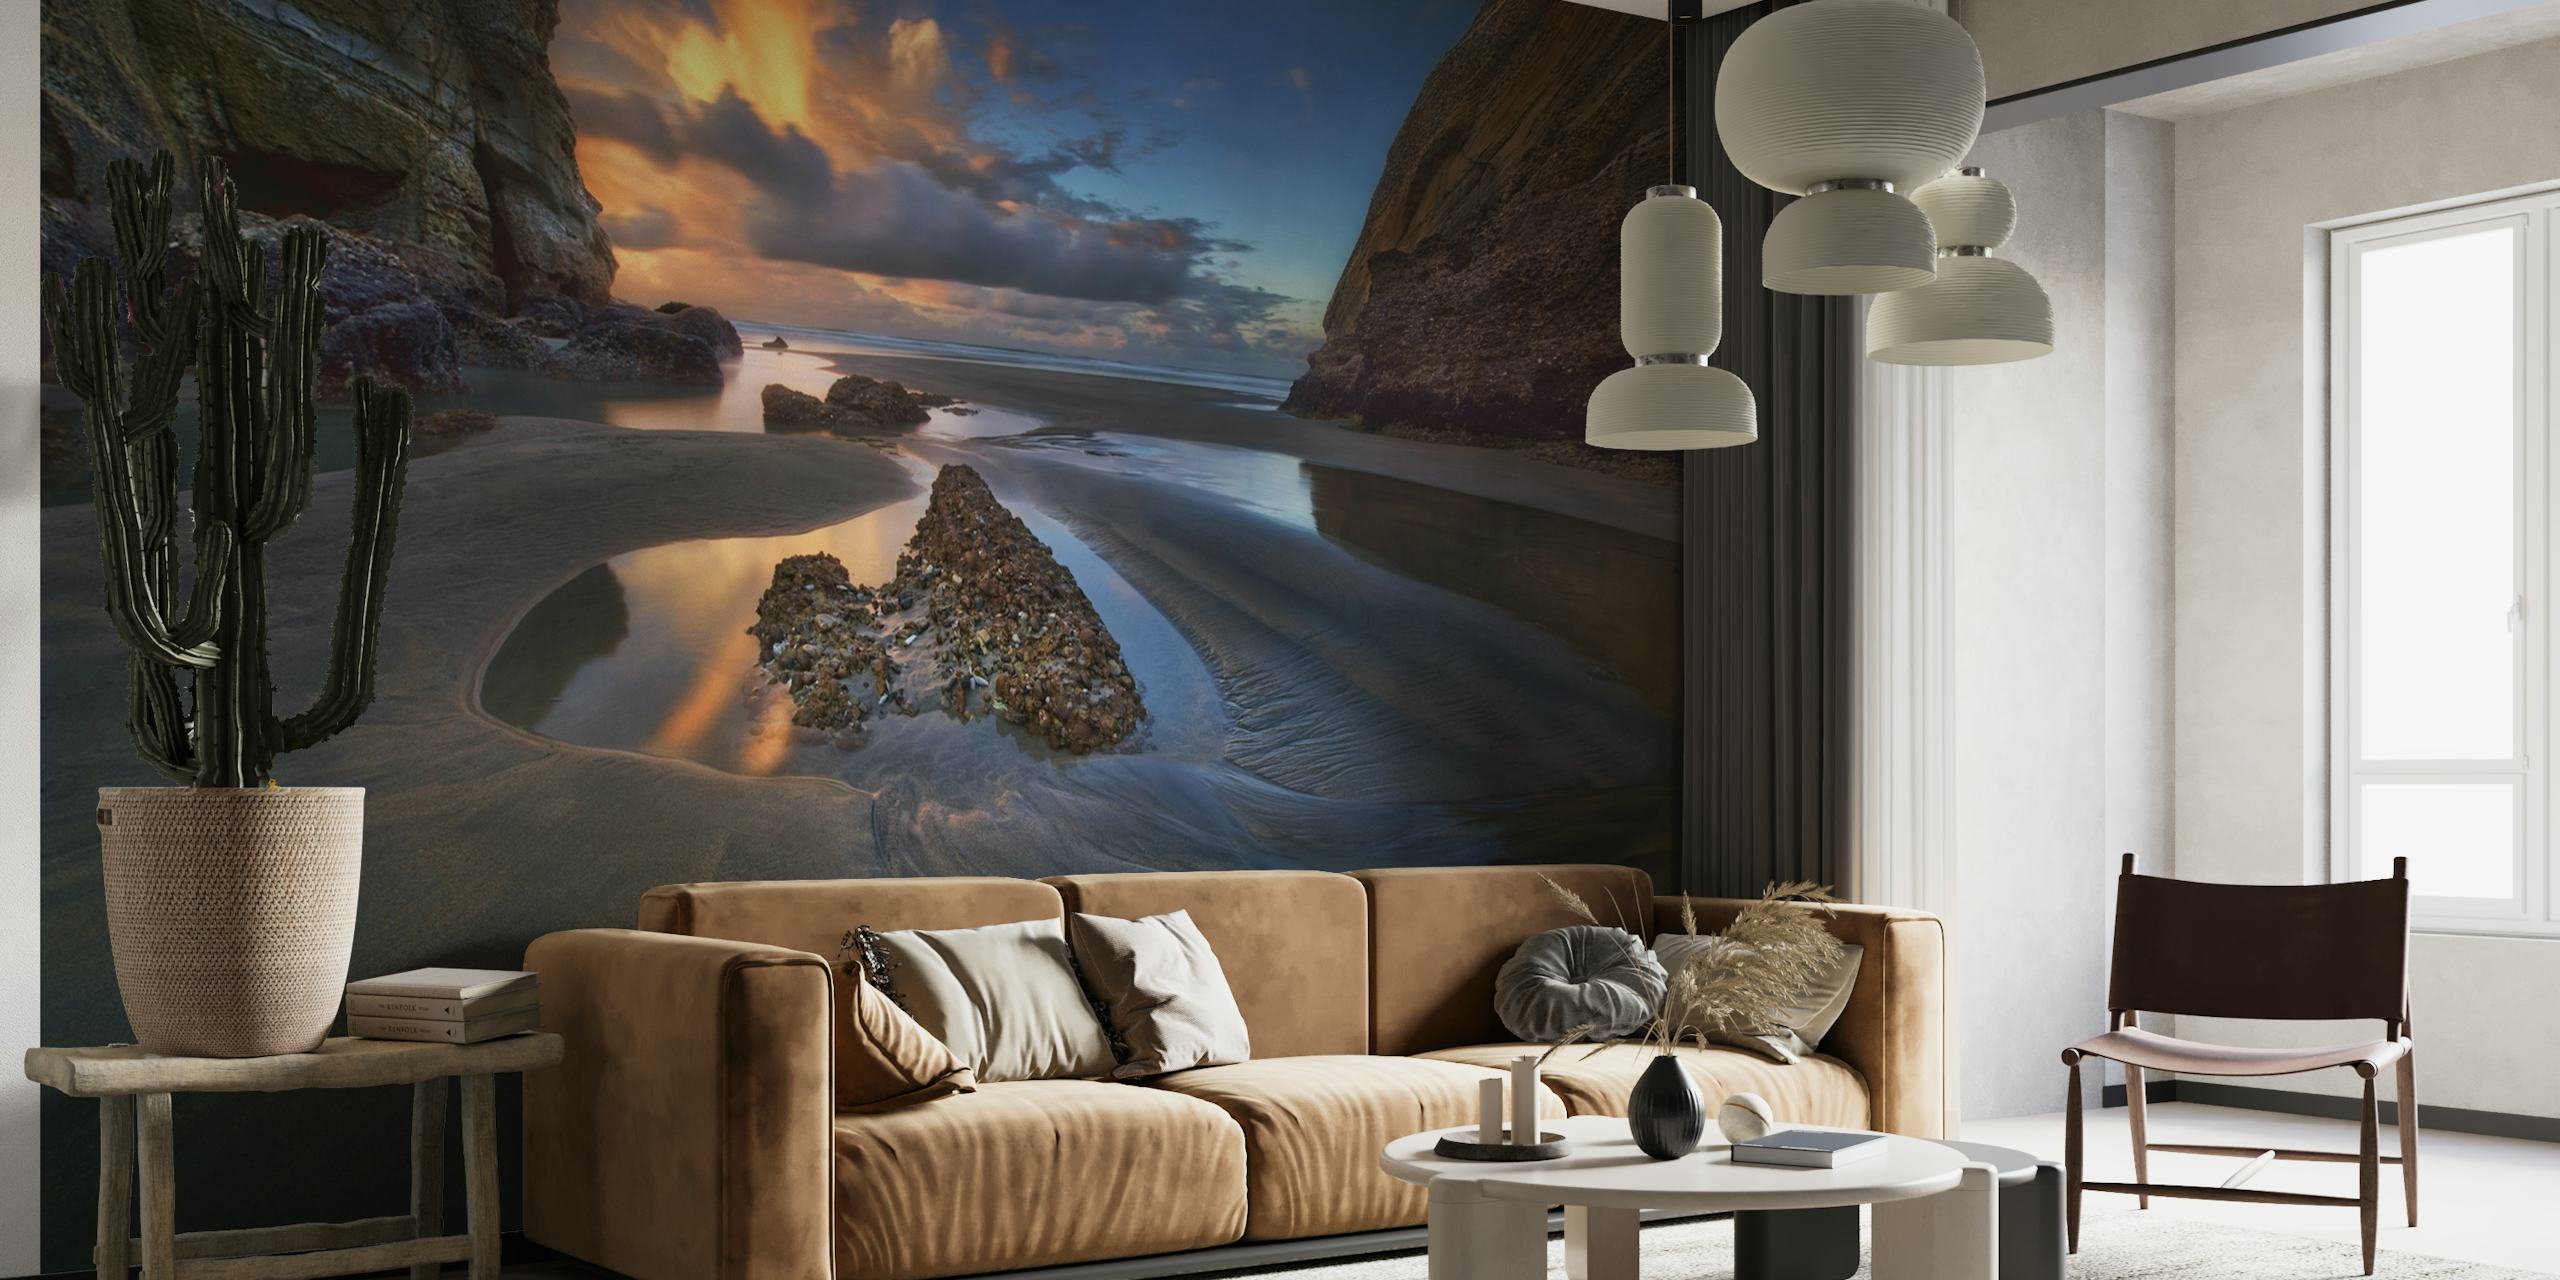 Impresionante mural de pared con un paisaje marino con puesta de sol y marea baja, dejando al descubierto rocas y piscinas de agua tranquila